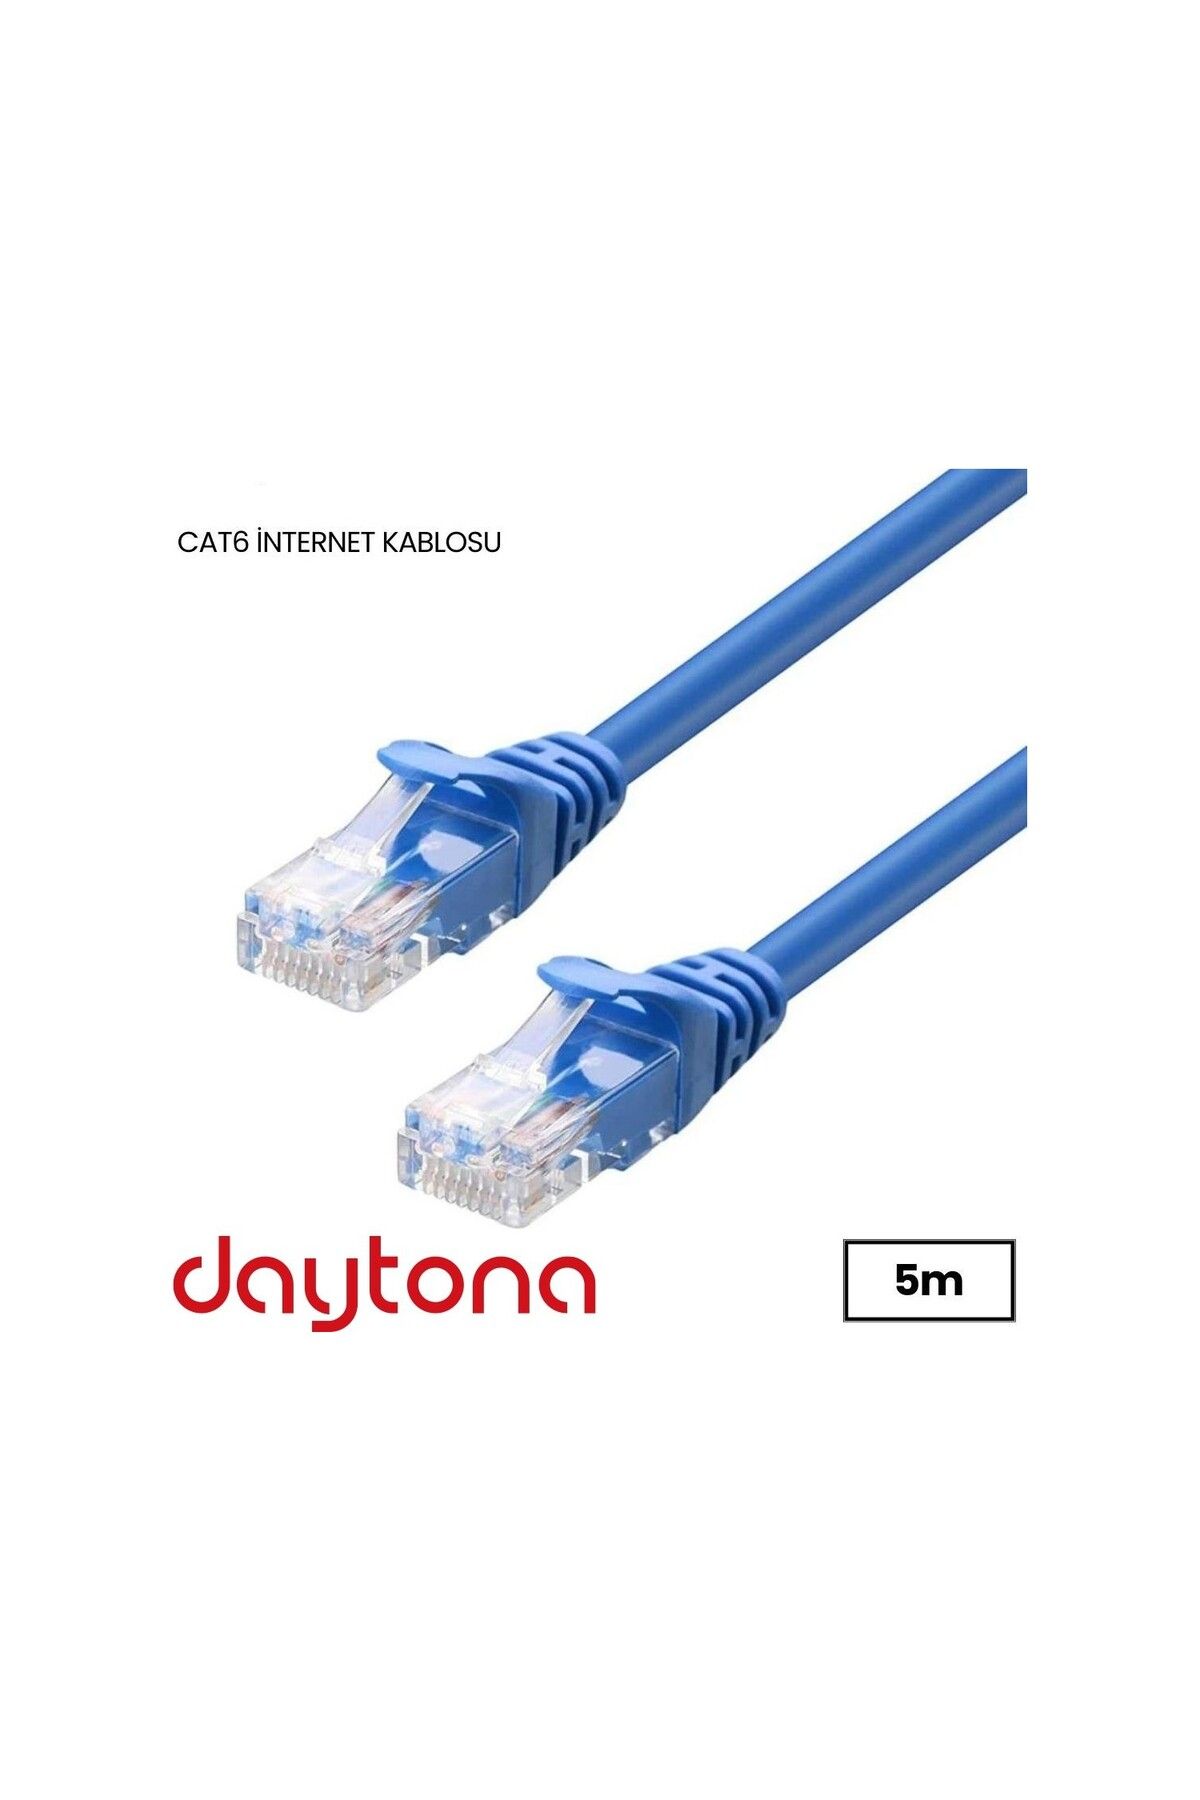 Daytona A4216 Cat6 Gigabit Internet Ethernet 10gbps Rj45 Lan Kablosu 5 Metre (2 ADET)